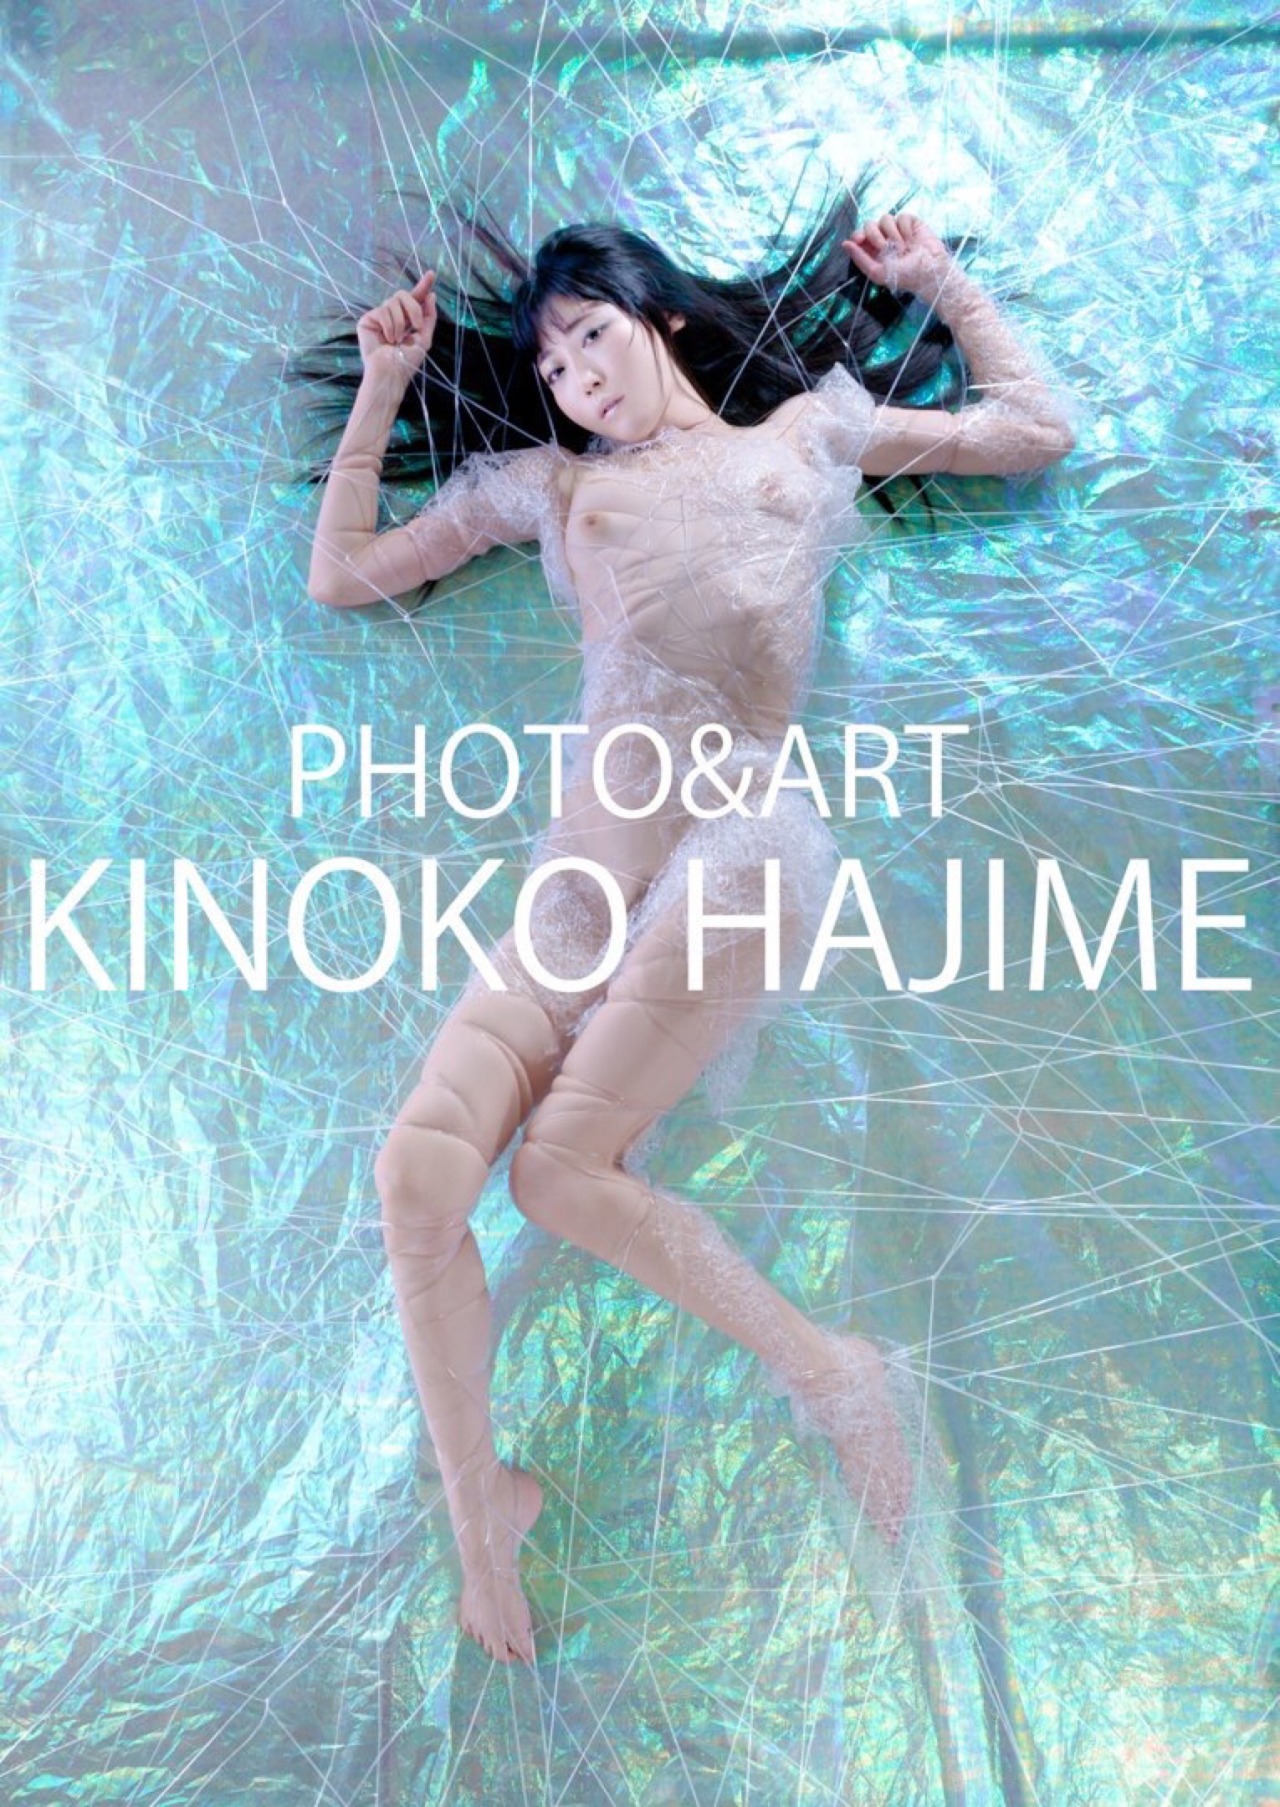 kinokohajime:  Kinoko Haiime Art Workhttp://shibari.jp I am photographer and rope